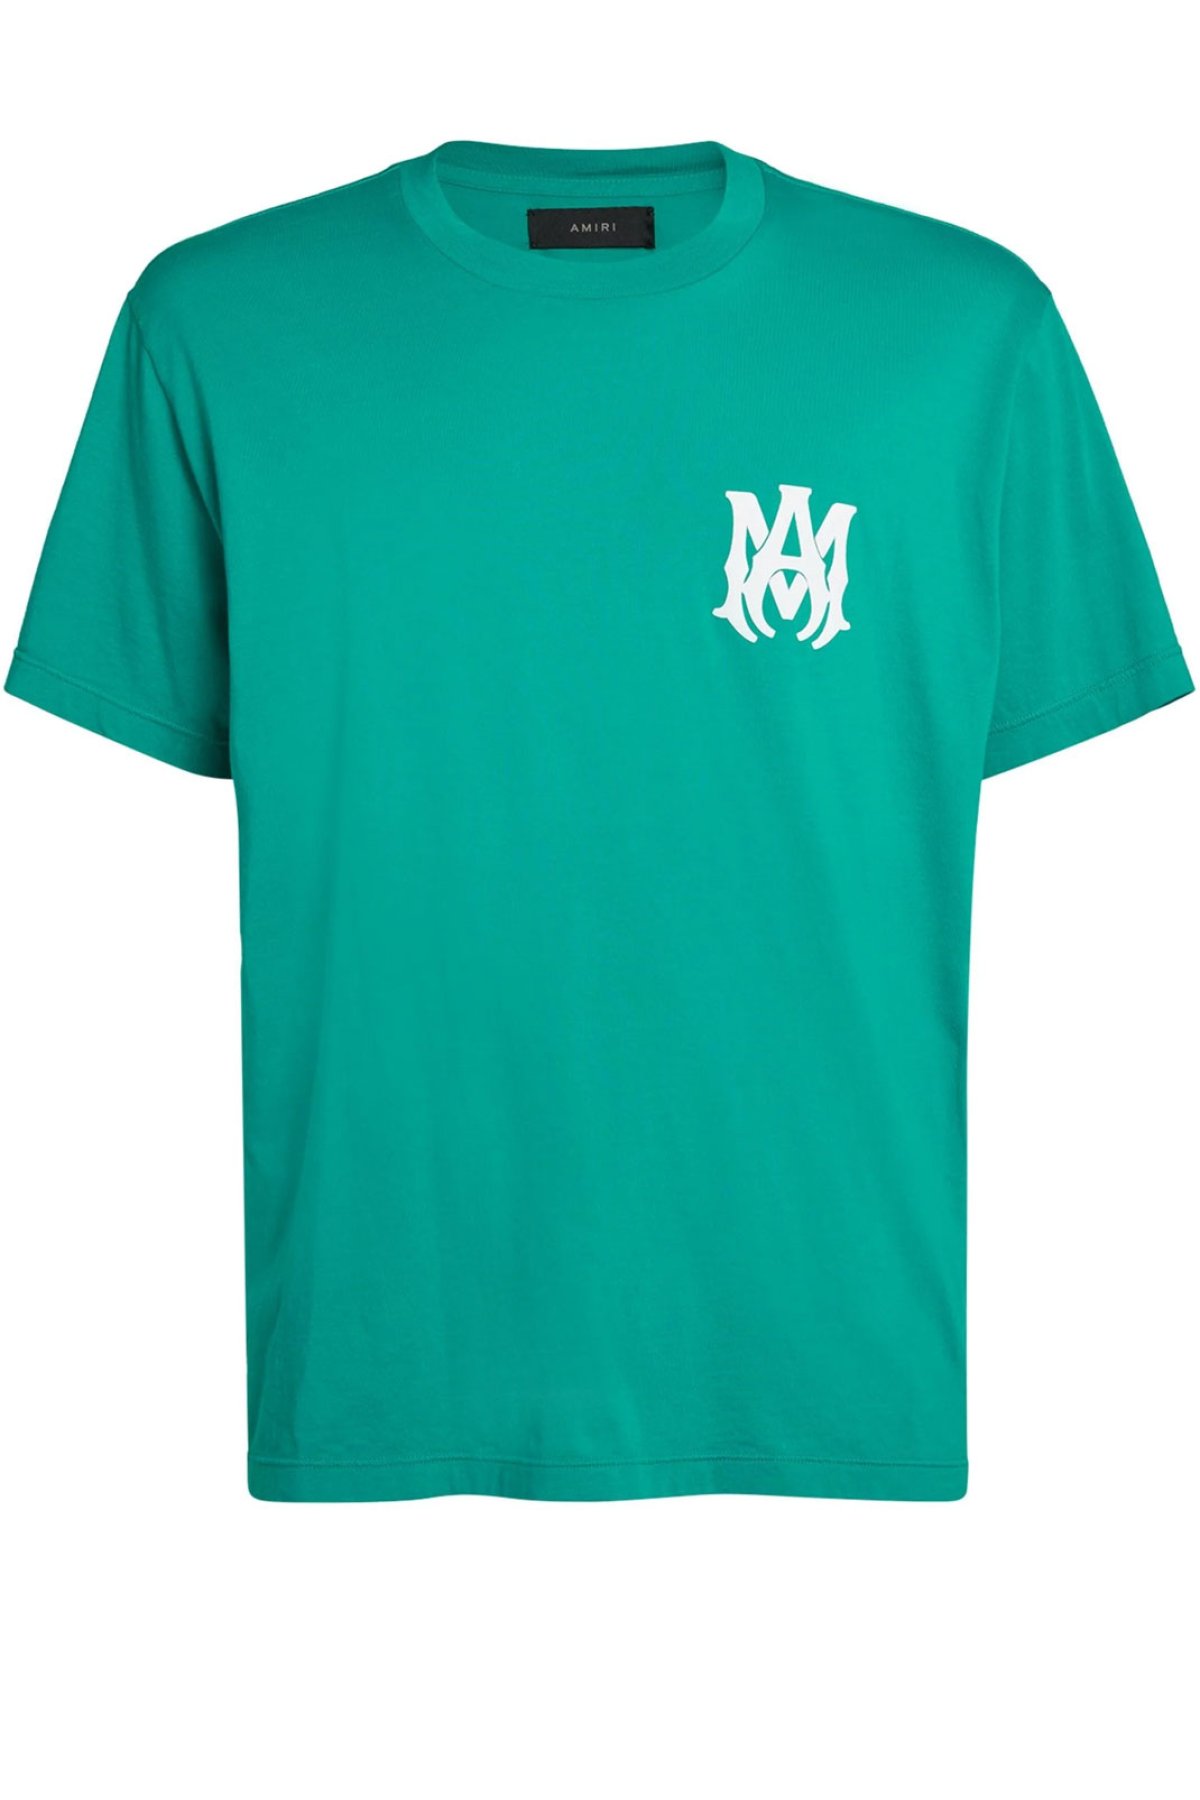 Amiri PS22MJL002 tričko zelené